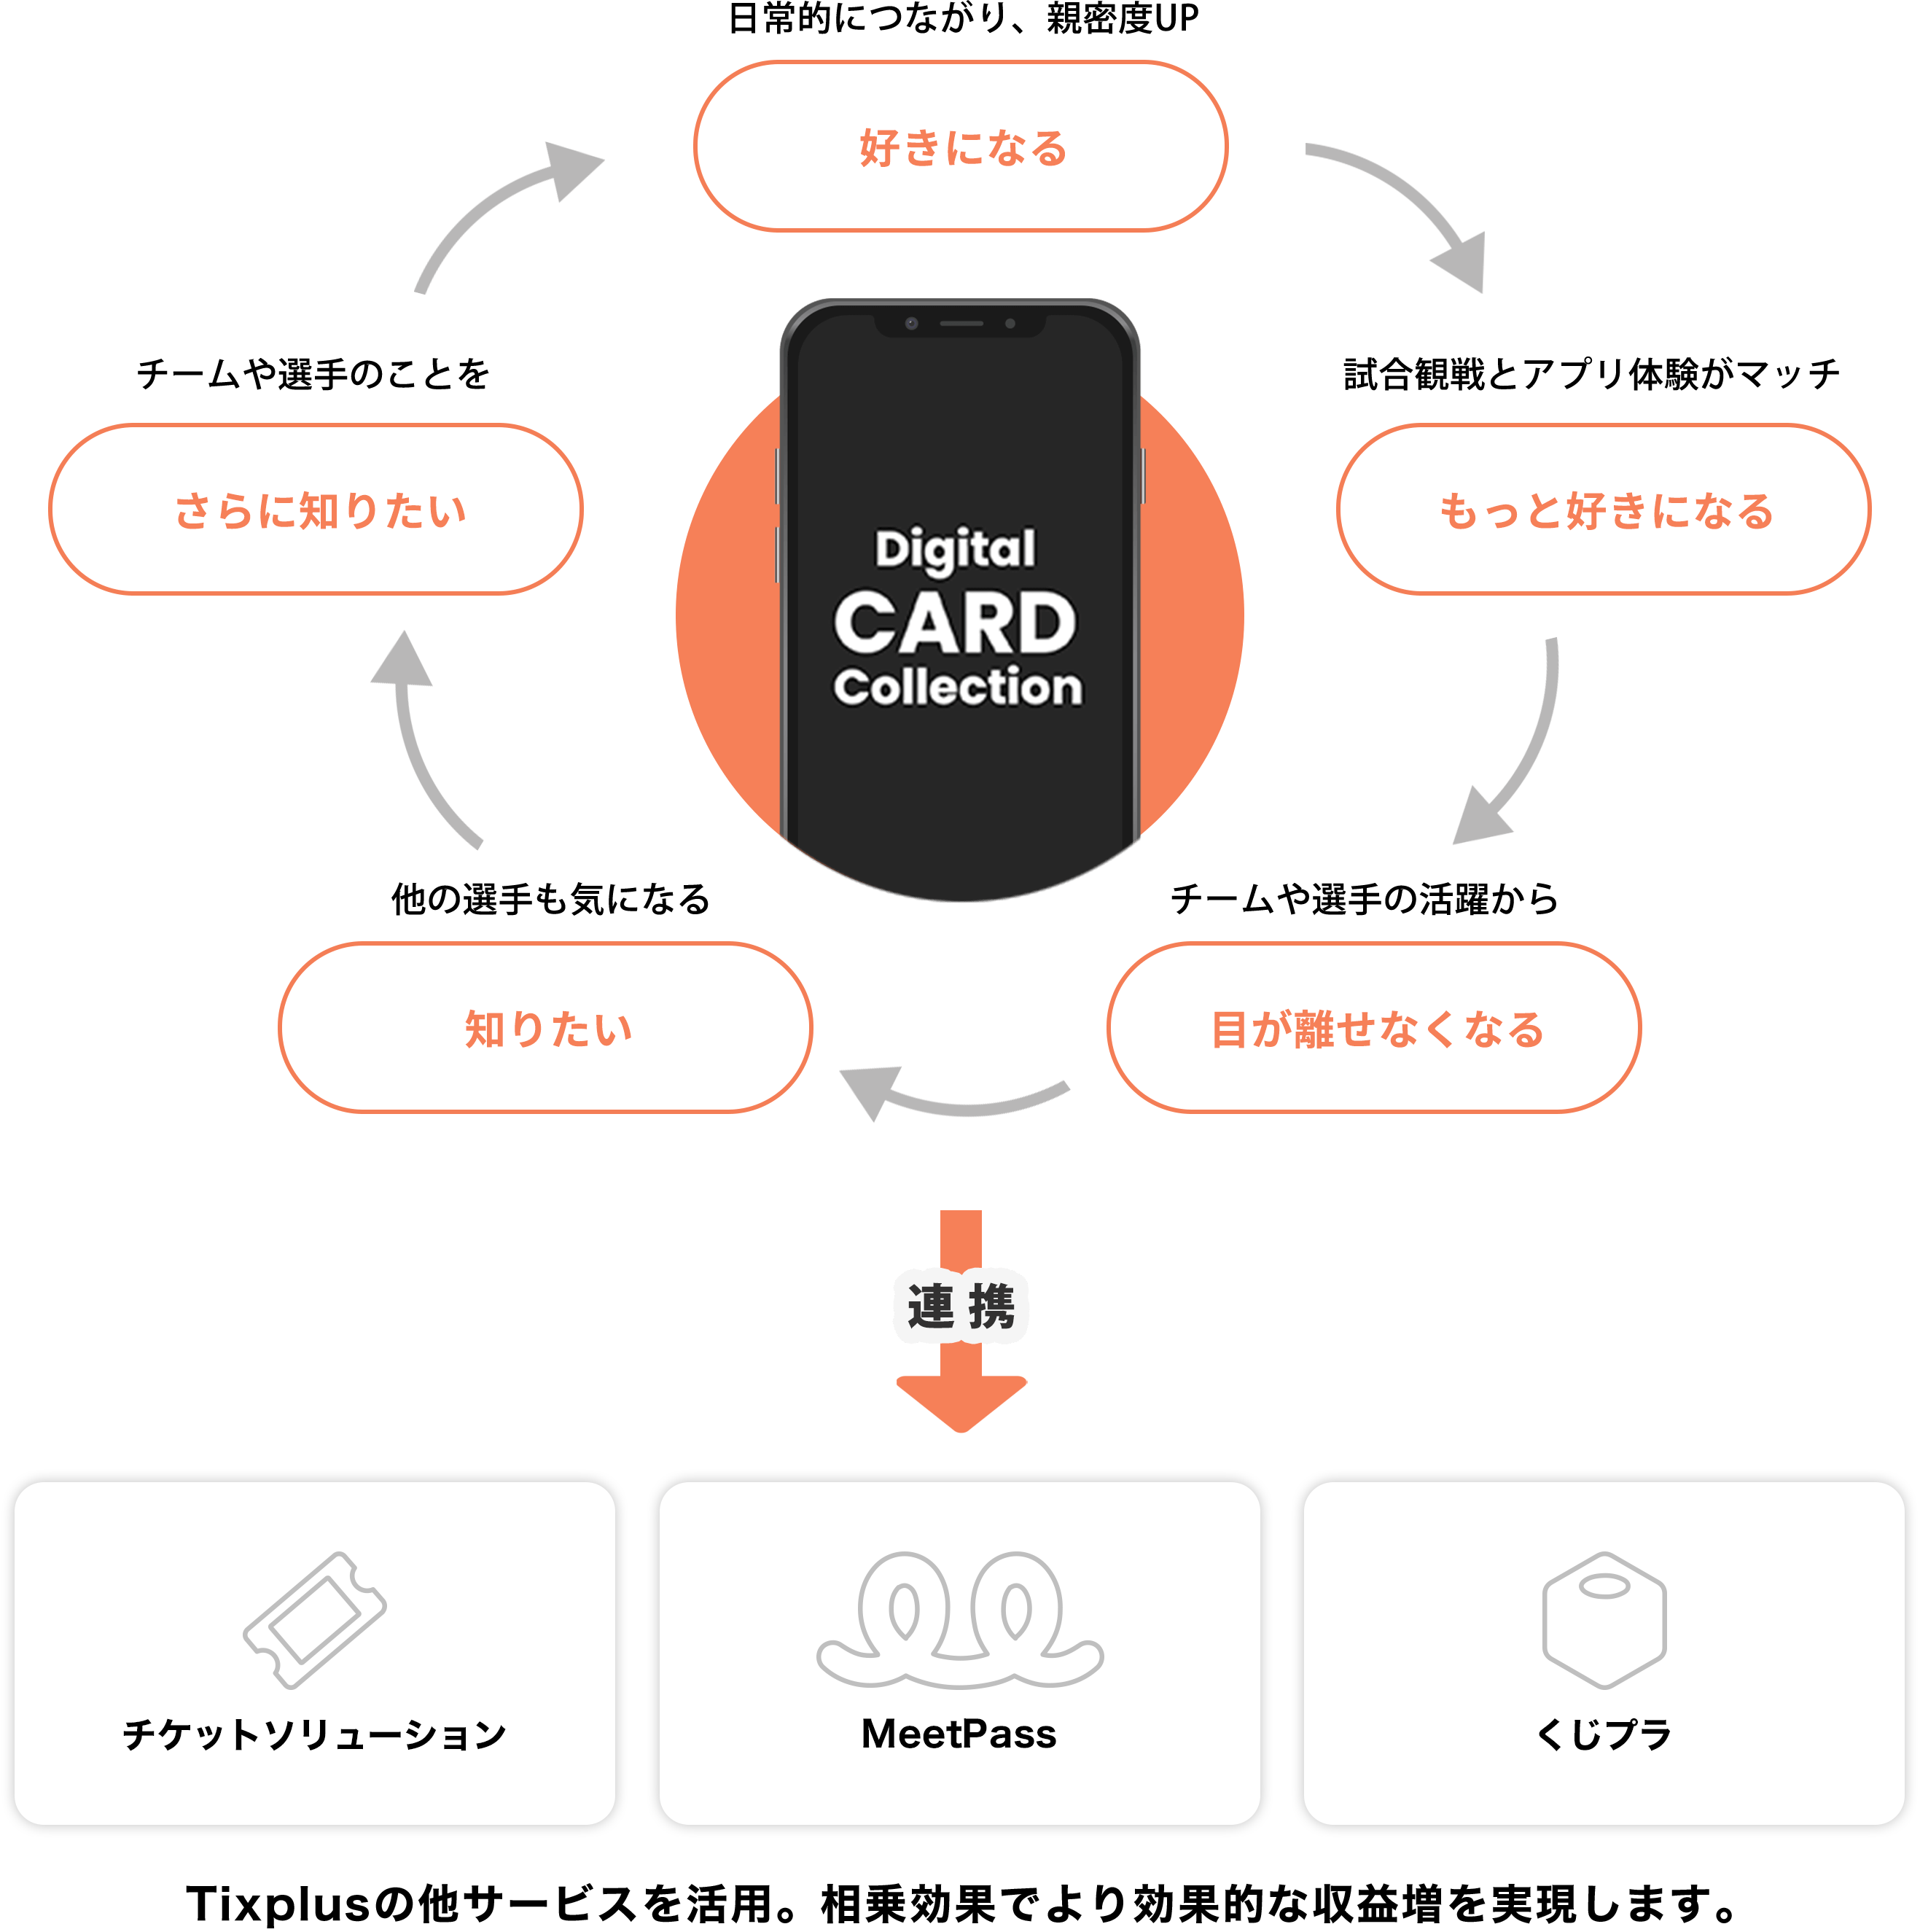 デジタルカードコレクションアプリがもたらす好循環例